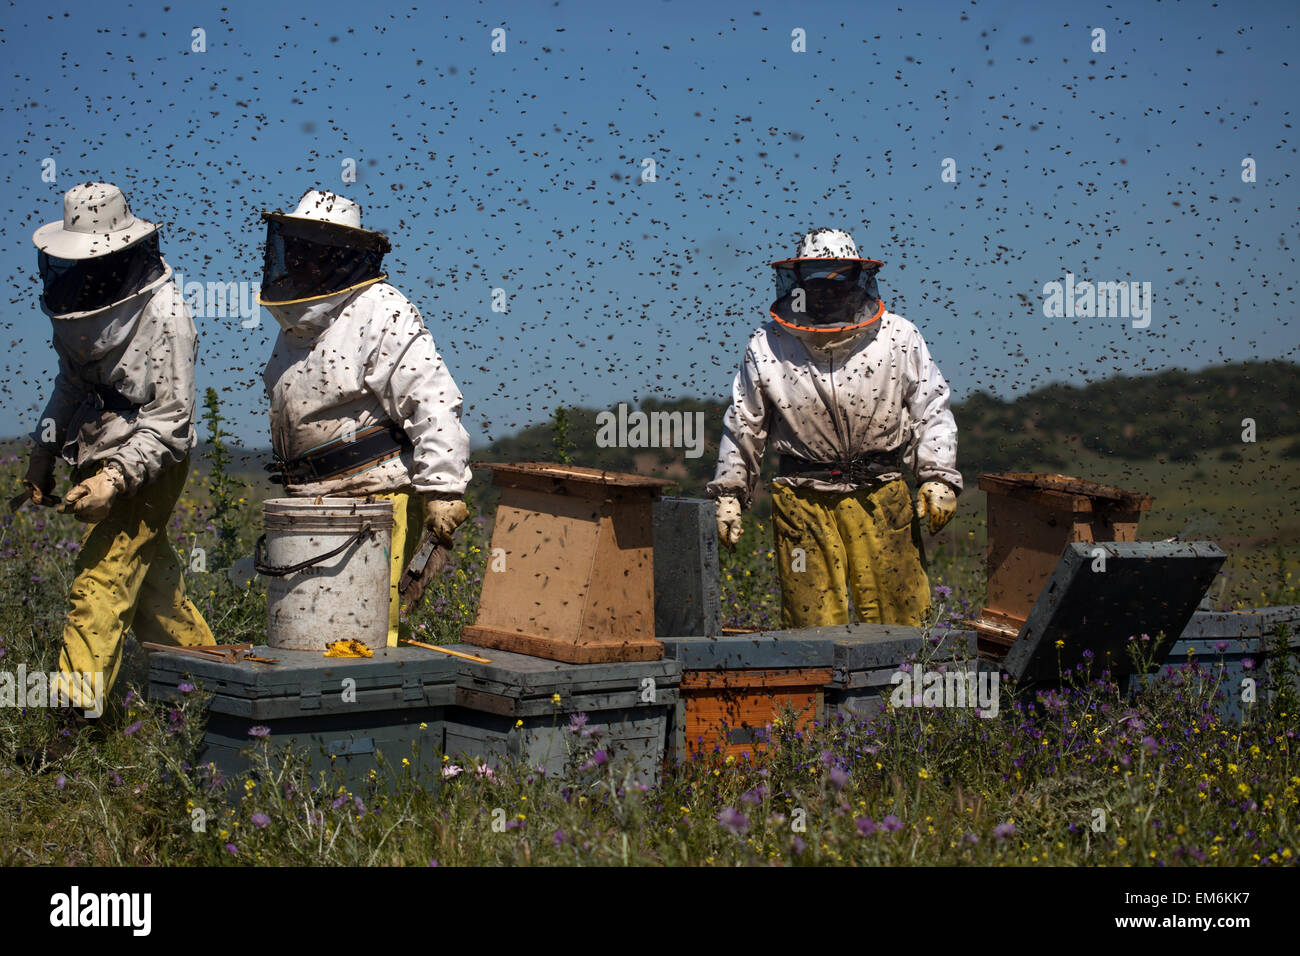 Imker arbeiten in einem Schwarm von Bienen Summen ein fliegen im Naturpark Los Alcornocales, Provinz Cadiz, Andalusien, Spanien Stockfoto